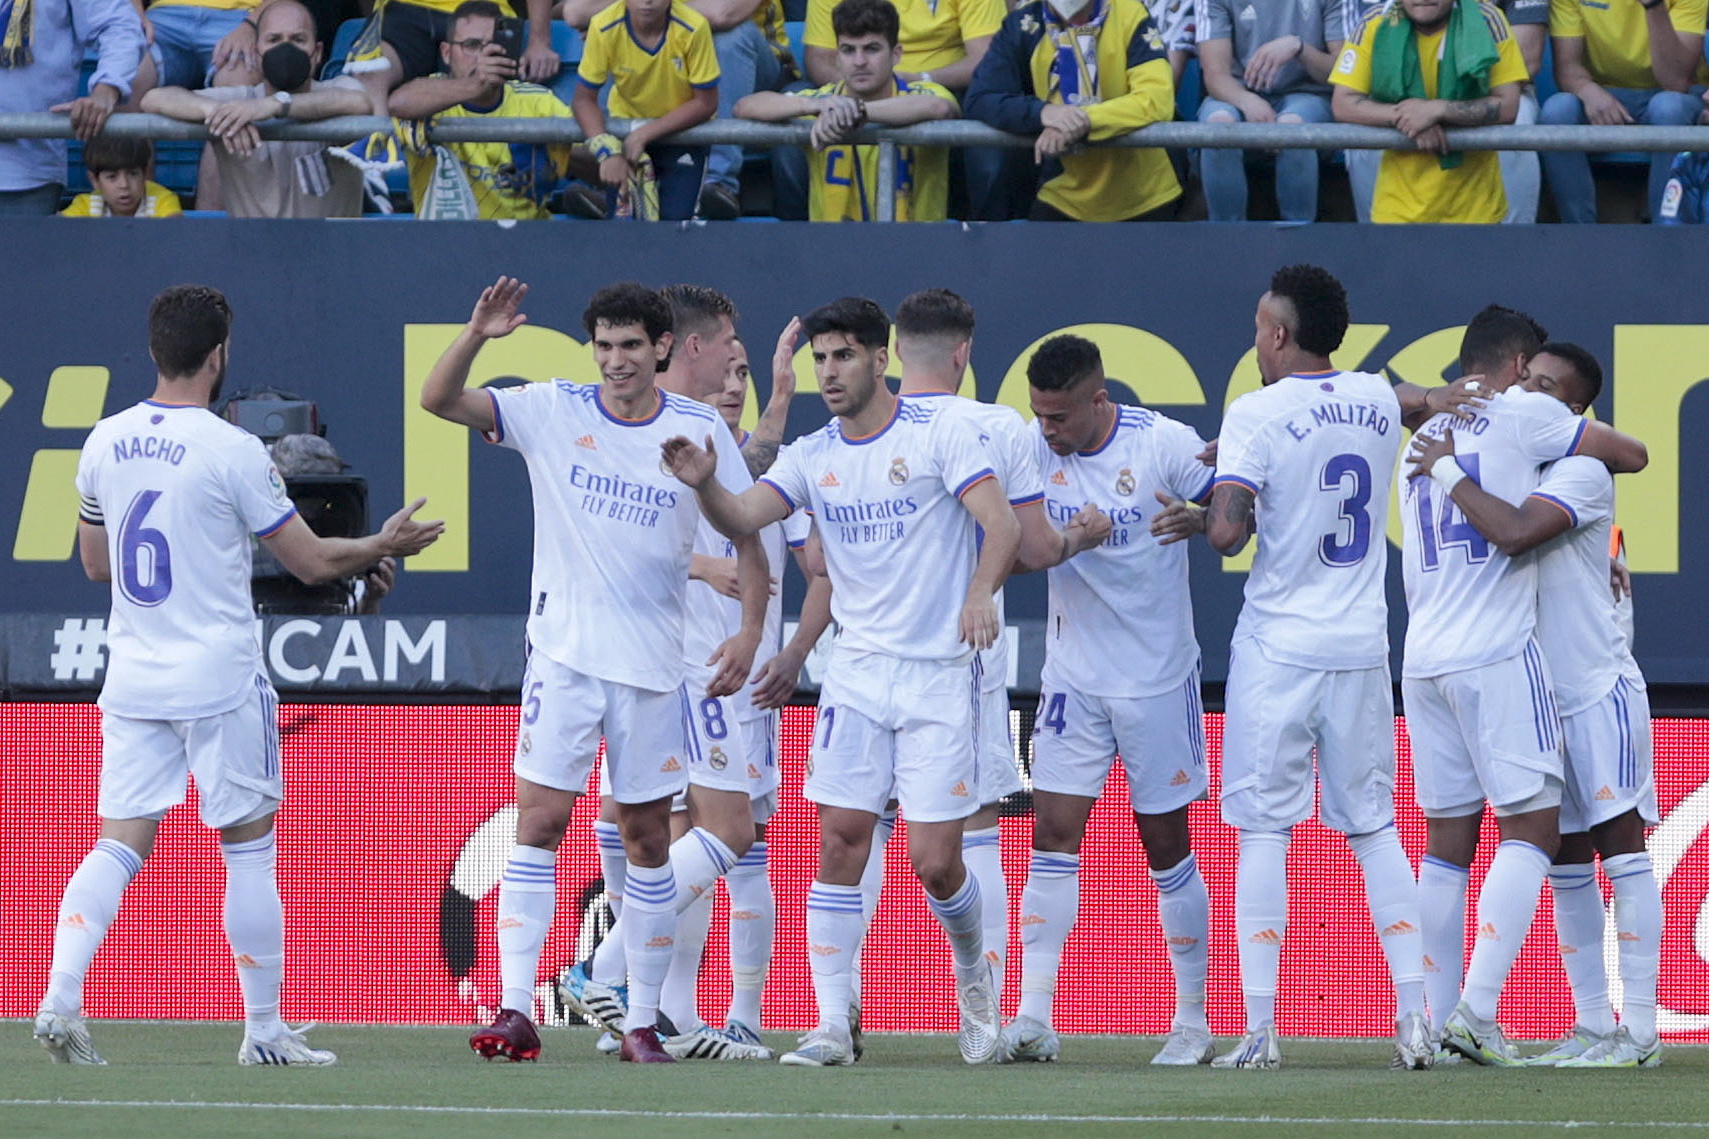 La Liga Matchday 18 Odds and Predictions - Villarreal USA